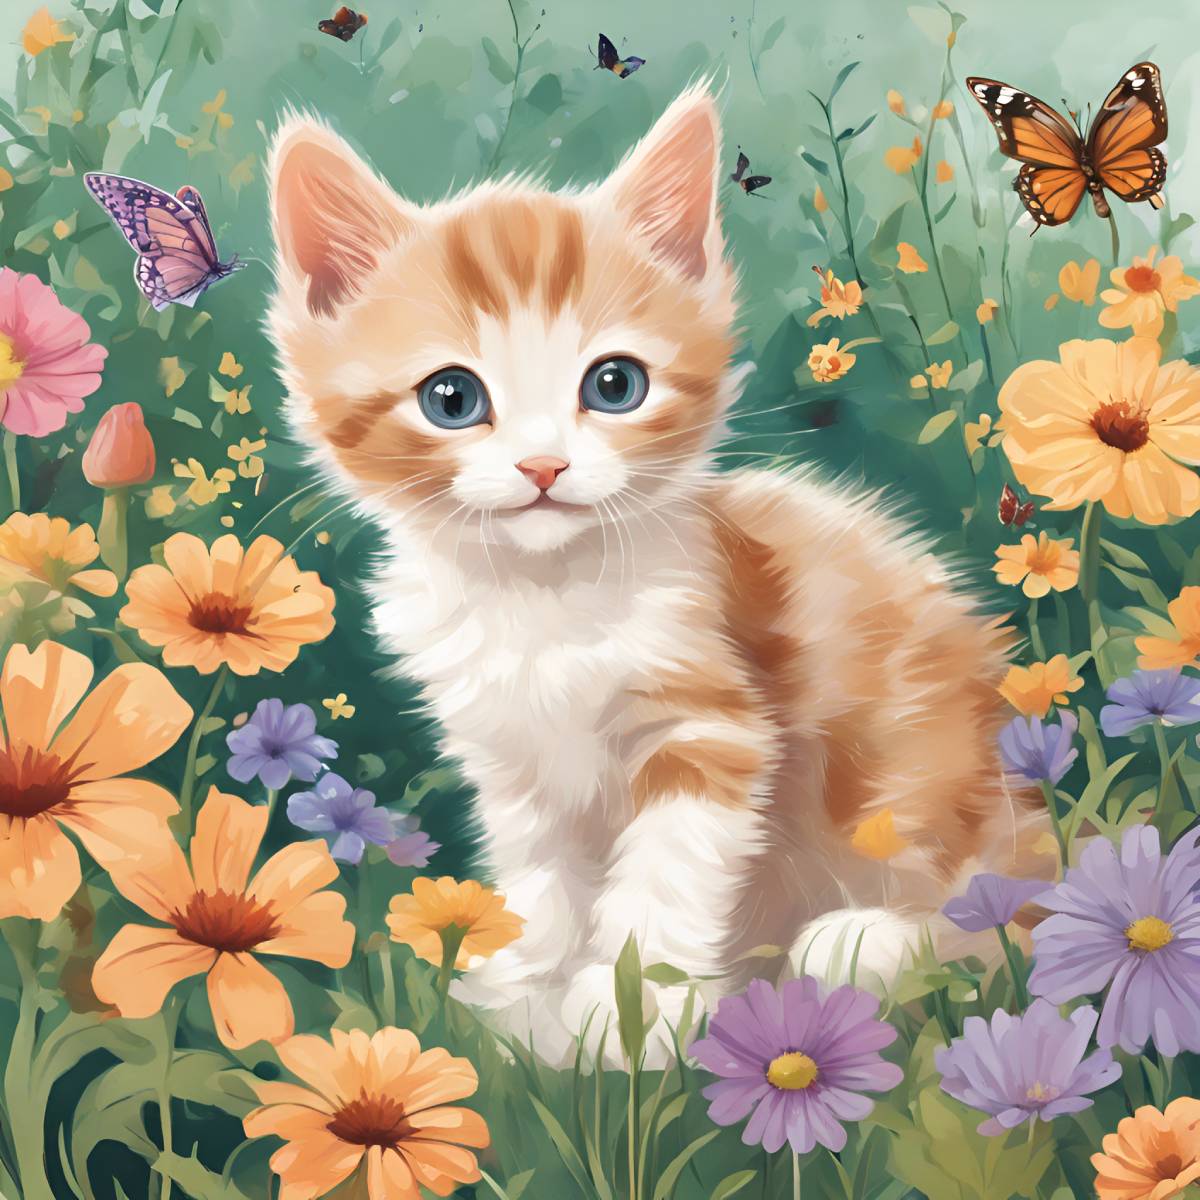 kits-de-pintura-de-diamantes-del-mago-de-diamantes-Animales-gato-gatito-en-un-jardín-de-flores-original.jpg